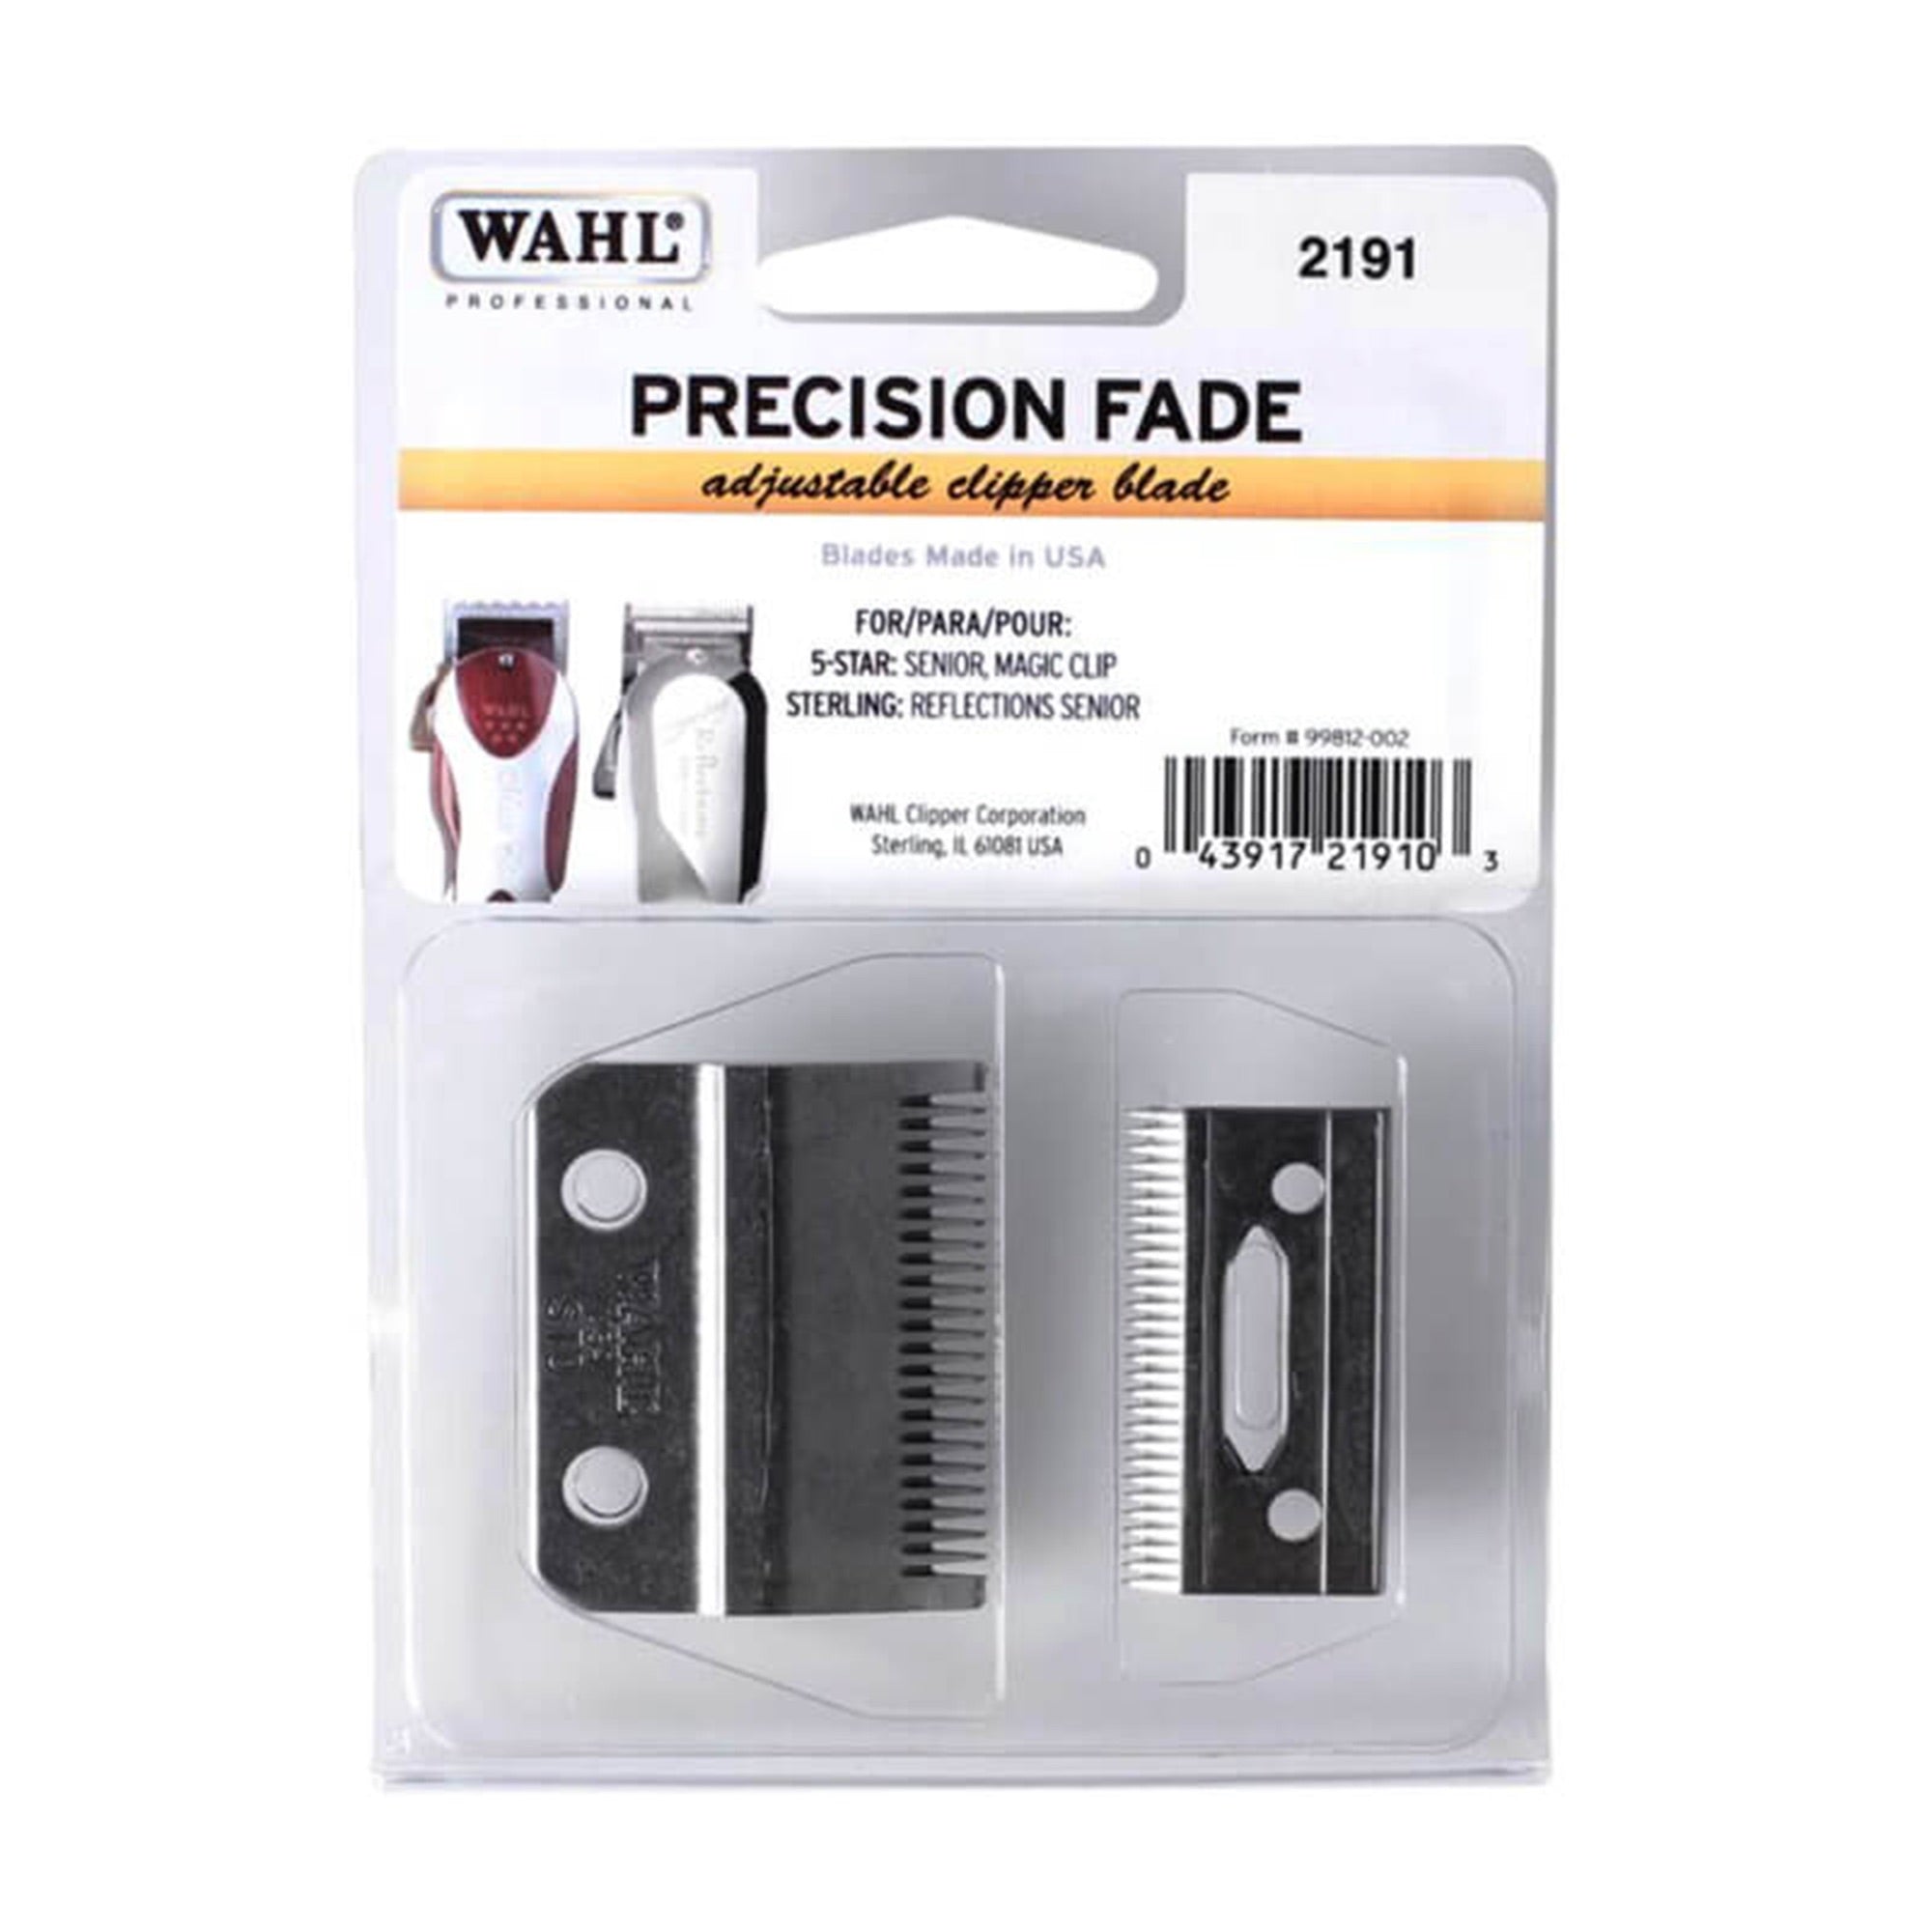 Wahl - Precision Fade Adjustable Clipper Blade 2191